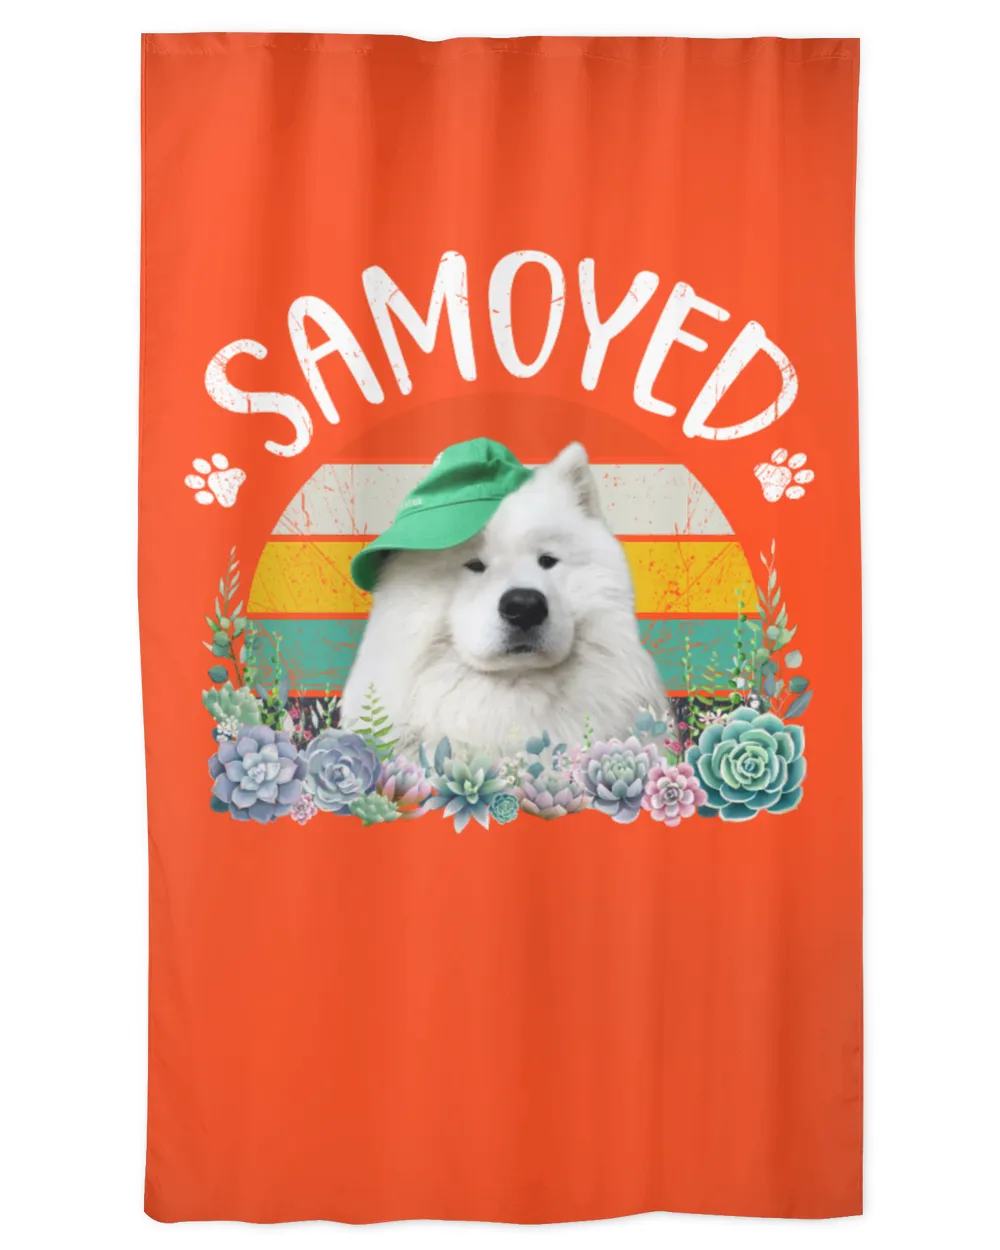 Samoyed Dog